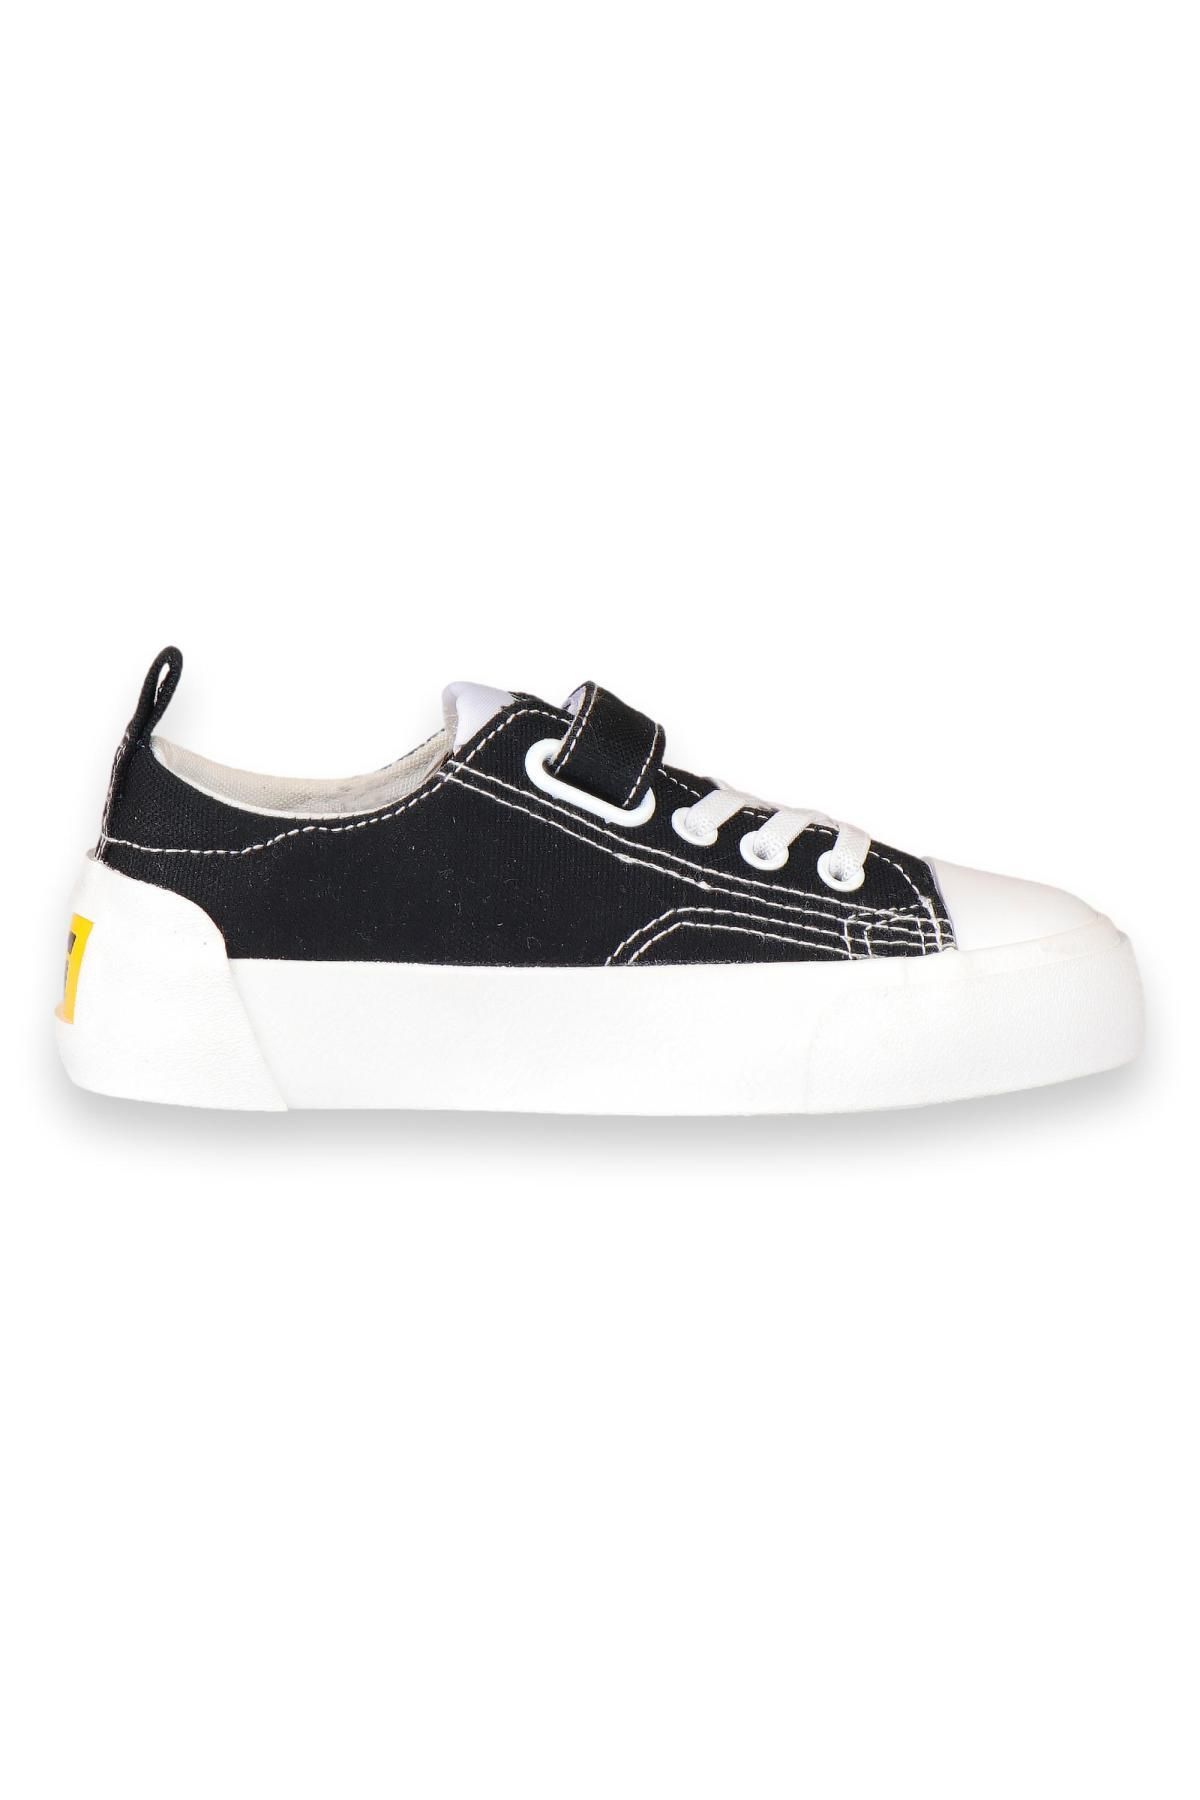 Vicco 346.P24Y141 Patik Keten Siyah-Beyaz Çocuk Spor Ayakkabı